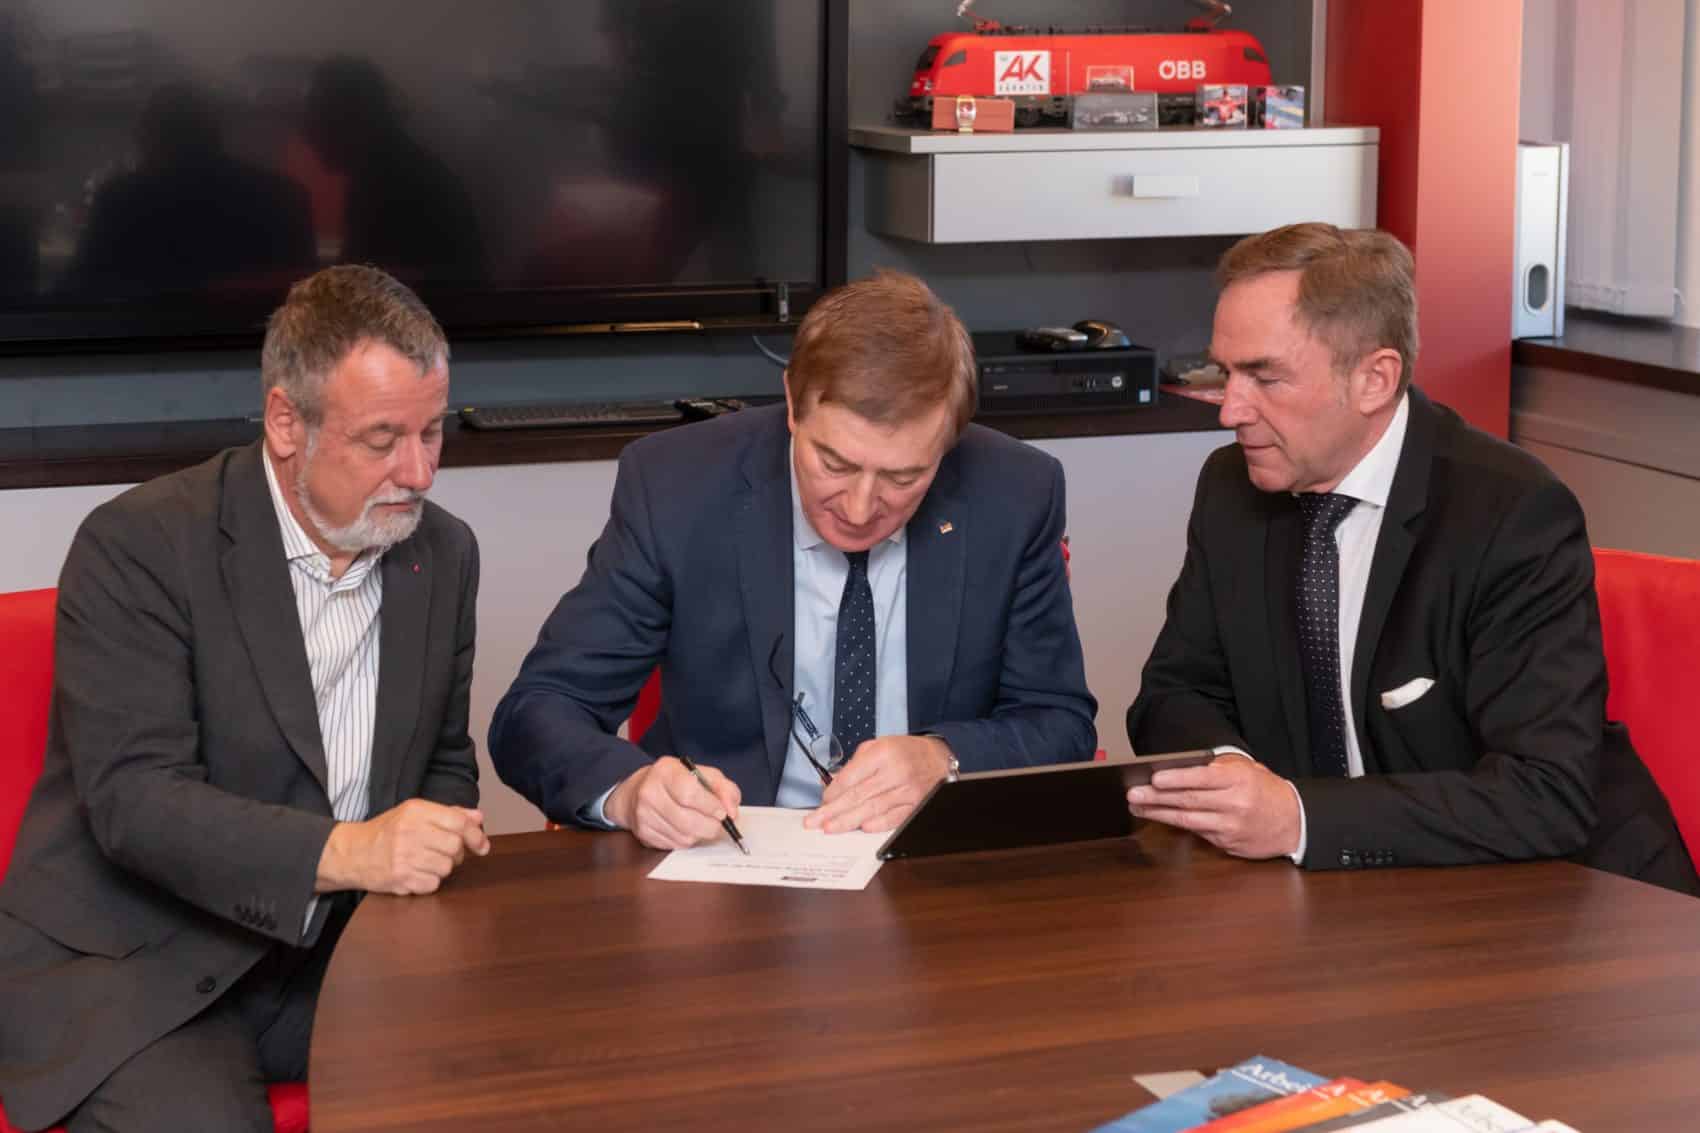 v.l.: ÖGB Landesvorsitzender Hermann Lipitsch, Superintendent Manfred Sauer und AK-Präsident Günther Goach beim Unterschreiben der Petition gegen die neue Karfreitags-Regelung.